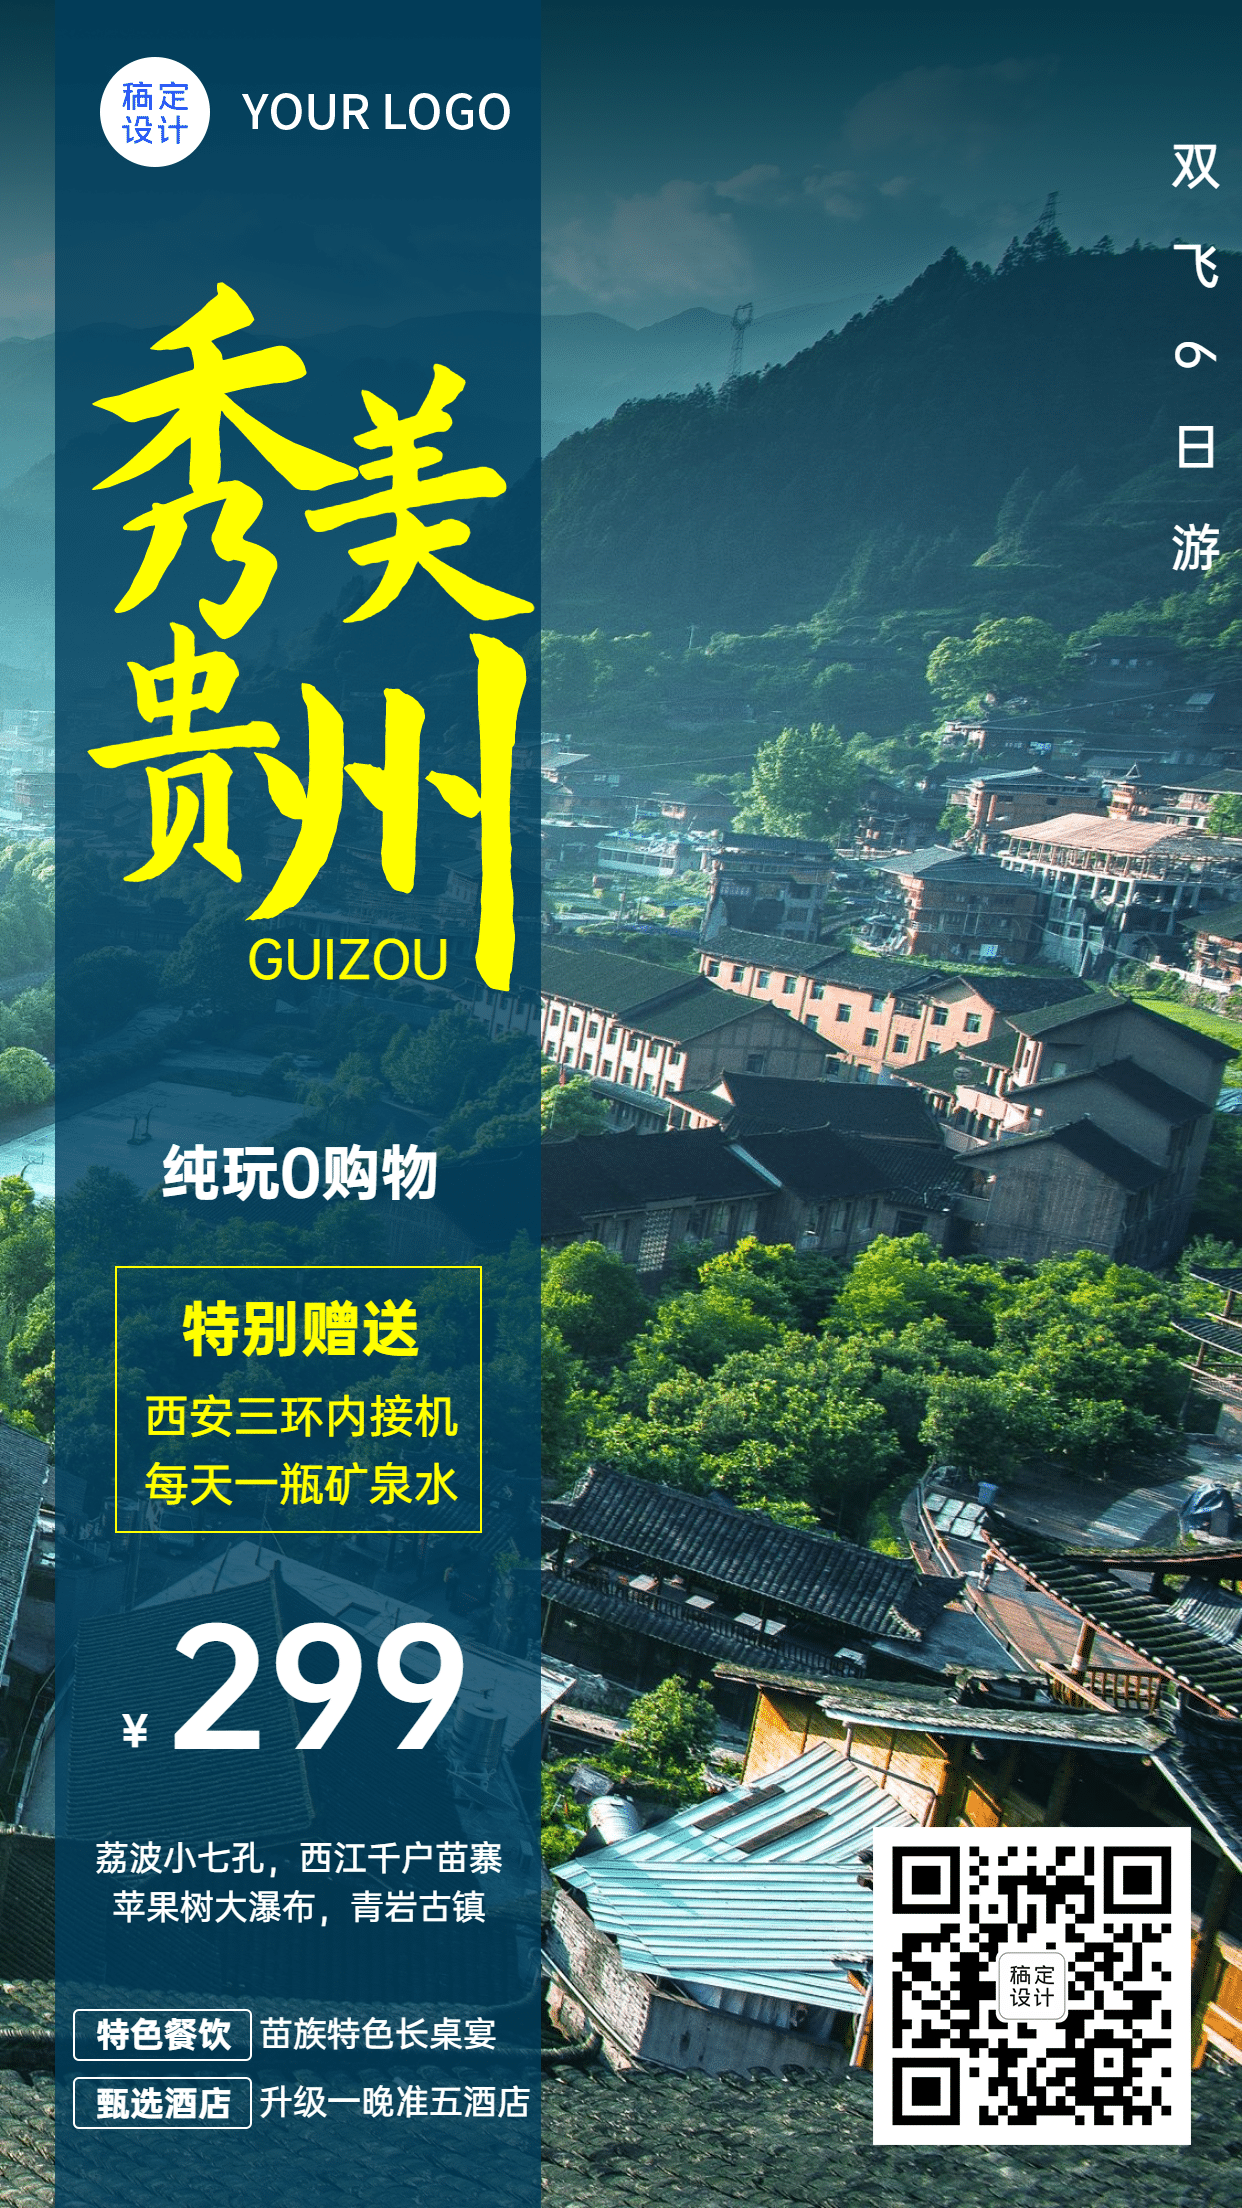 山野名胜桂林报团游旅游手机海报_图片模板素材-稿定设计